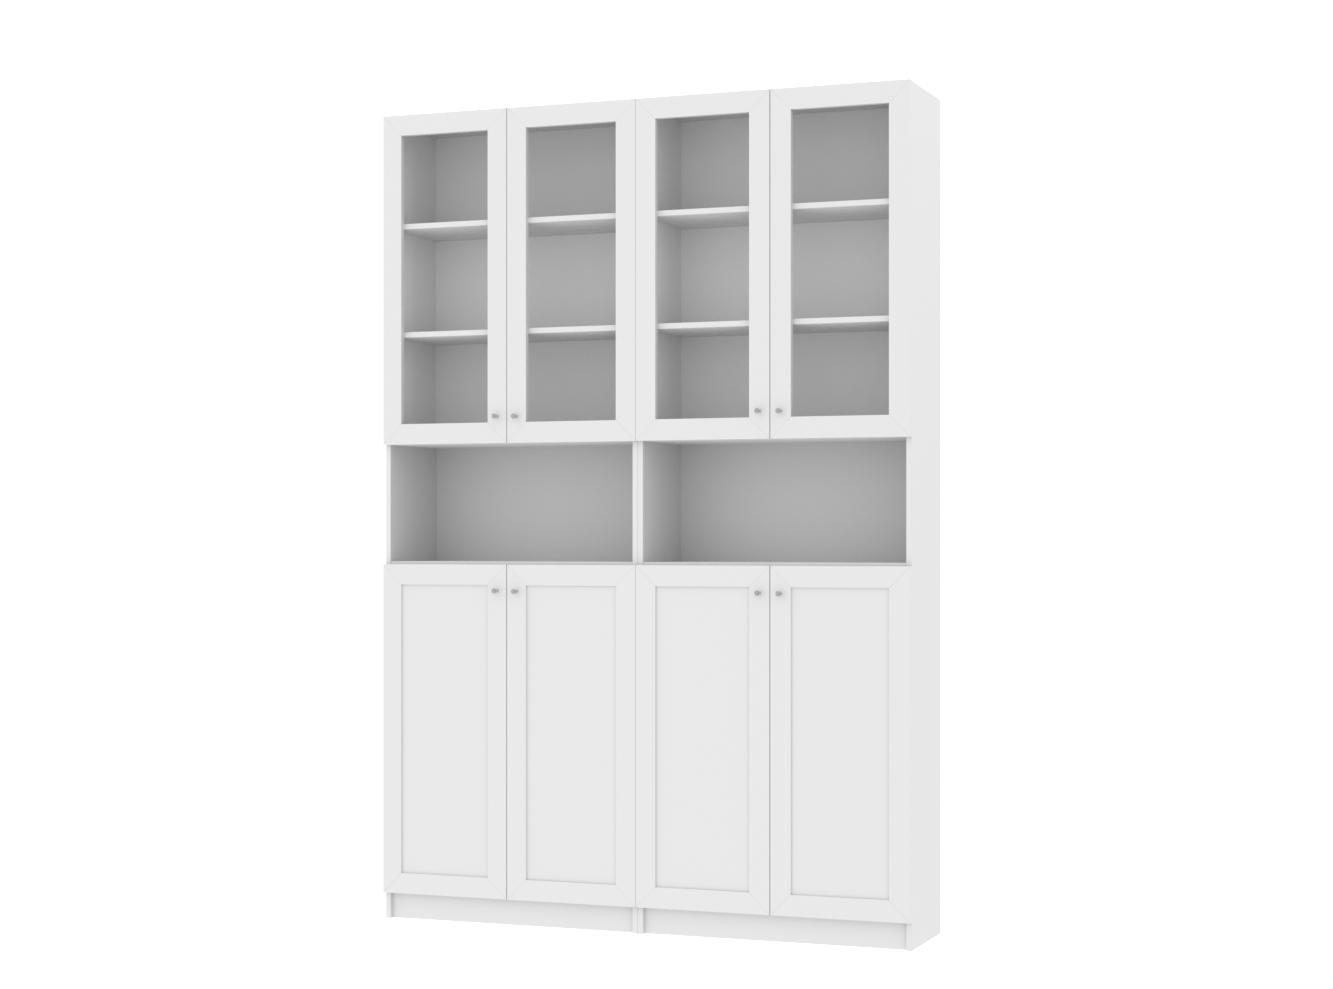 Изображение товара Книжный шкаф Билли 25 white ИКЕА (IKEA), 160x30x237 см на сайте adeta.ru